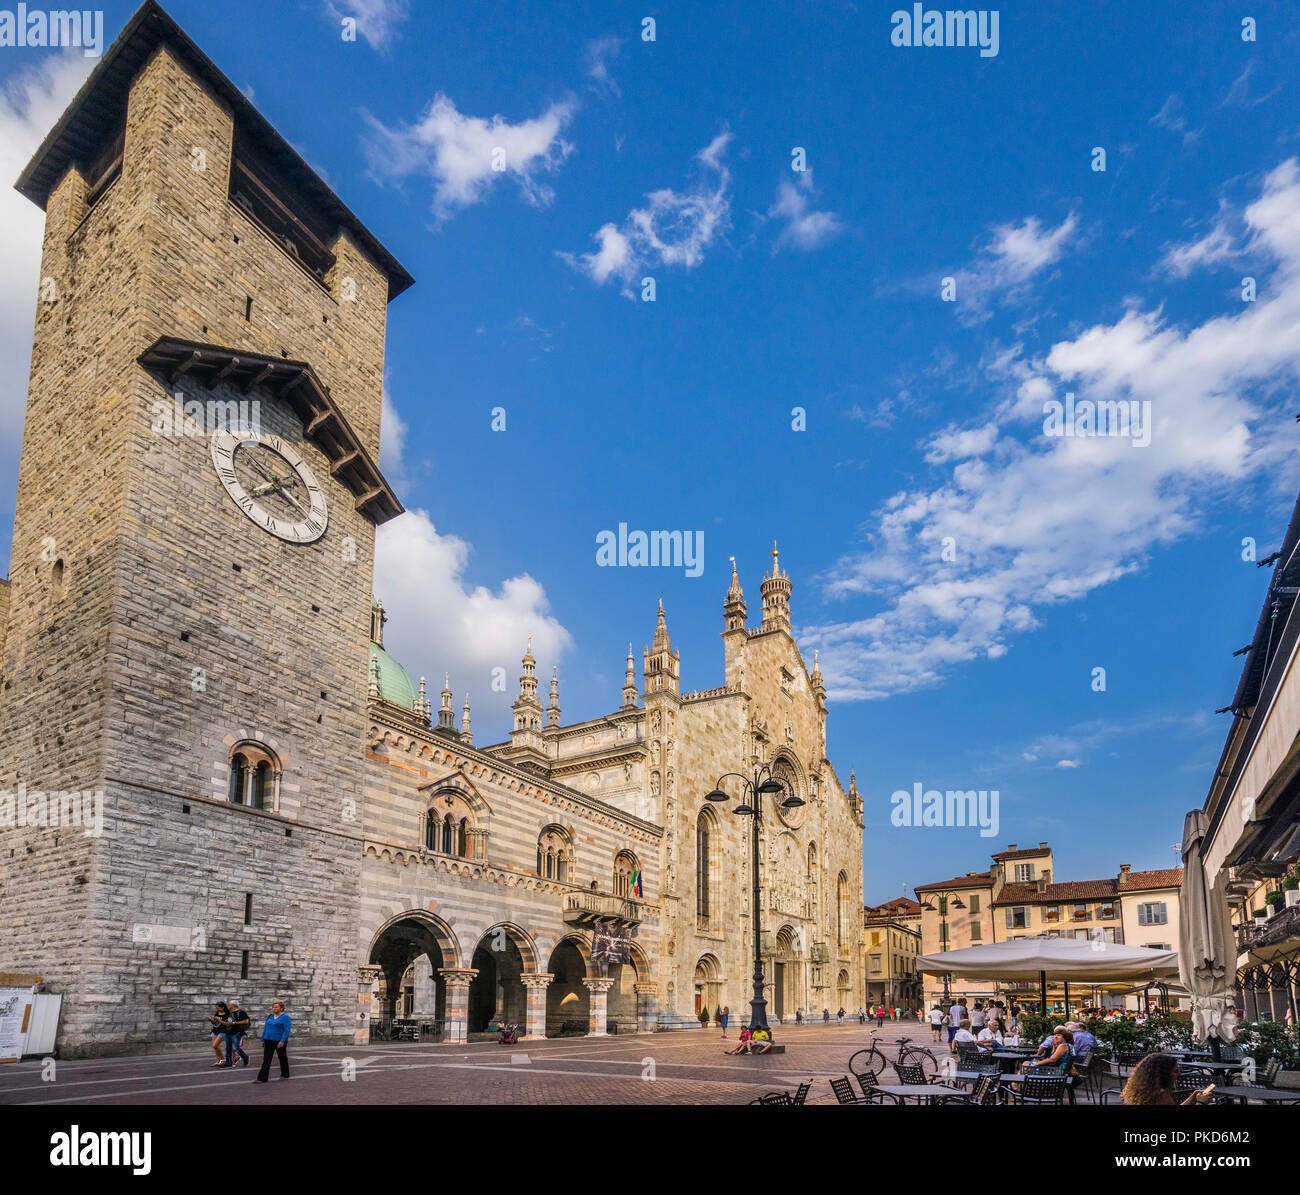 Piazza del Duomo à Côme avec vue sur l'architecture de style Lombard de Palazzo Broletto et l'imposante façade de la Cathédrale de Côme Banque D'Images